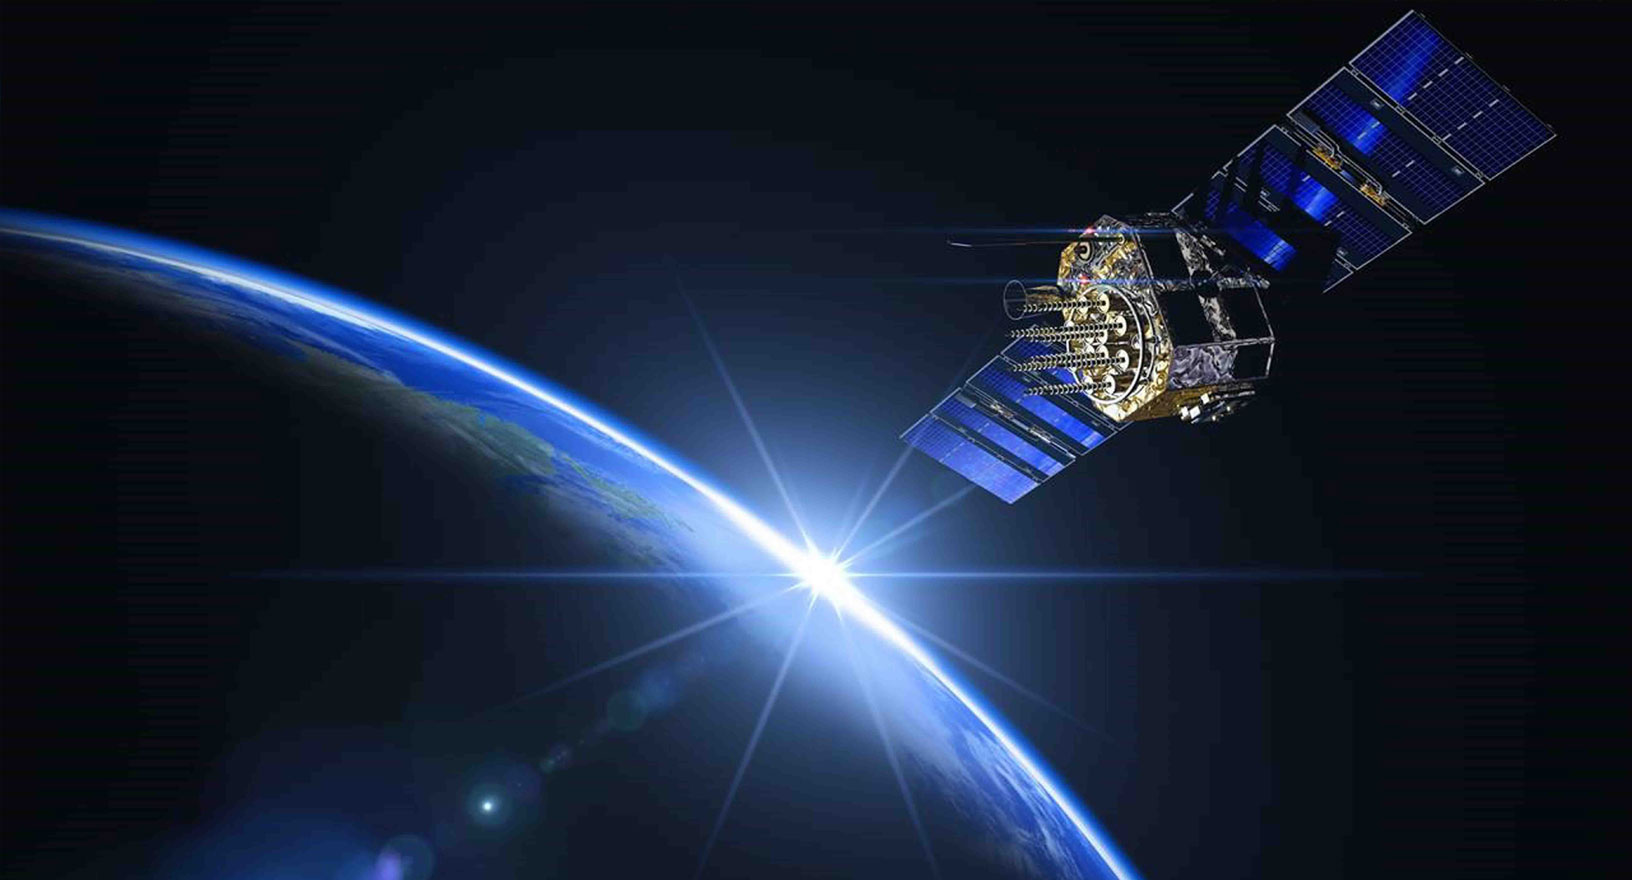 Satellit des Global Navigation Satellite System, der die Erde im Weltraum umkreist.